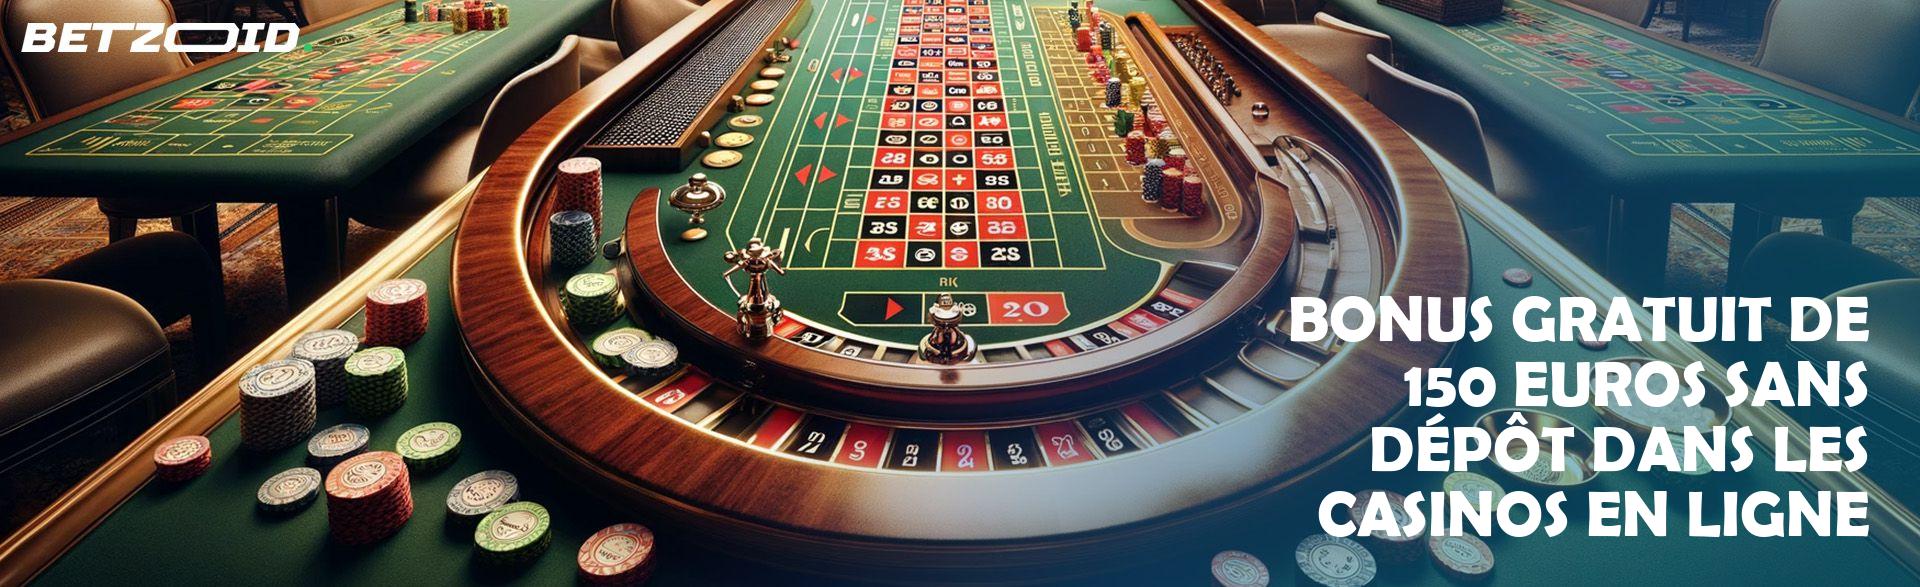 Bonus Gratuit de 150 Euros sans Dépôt dans les Casinos en Ligne.